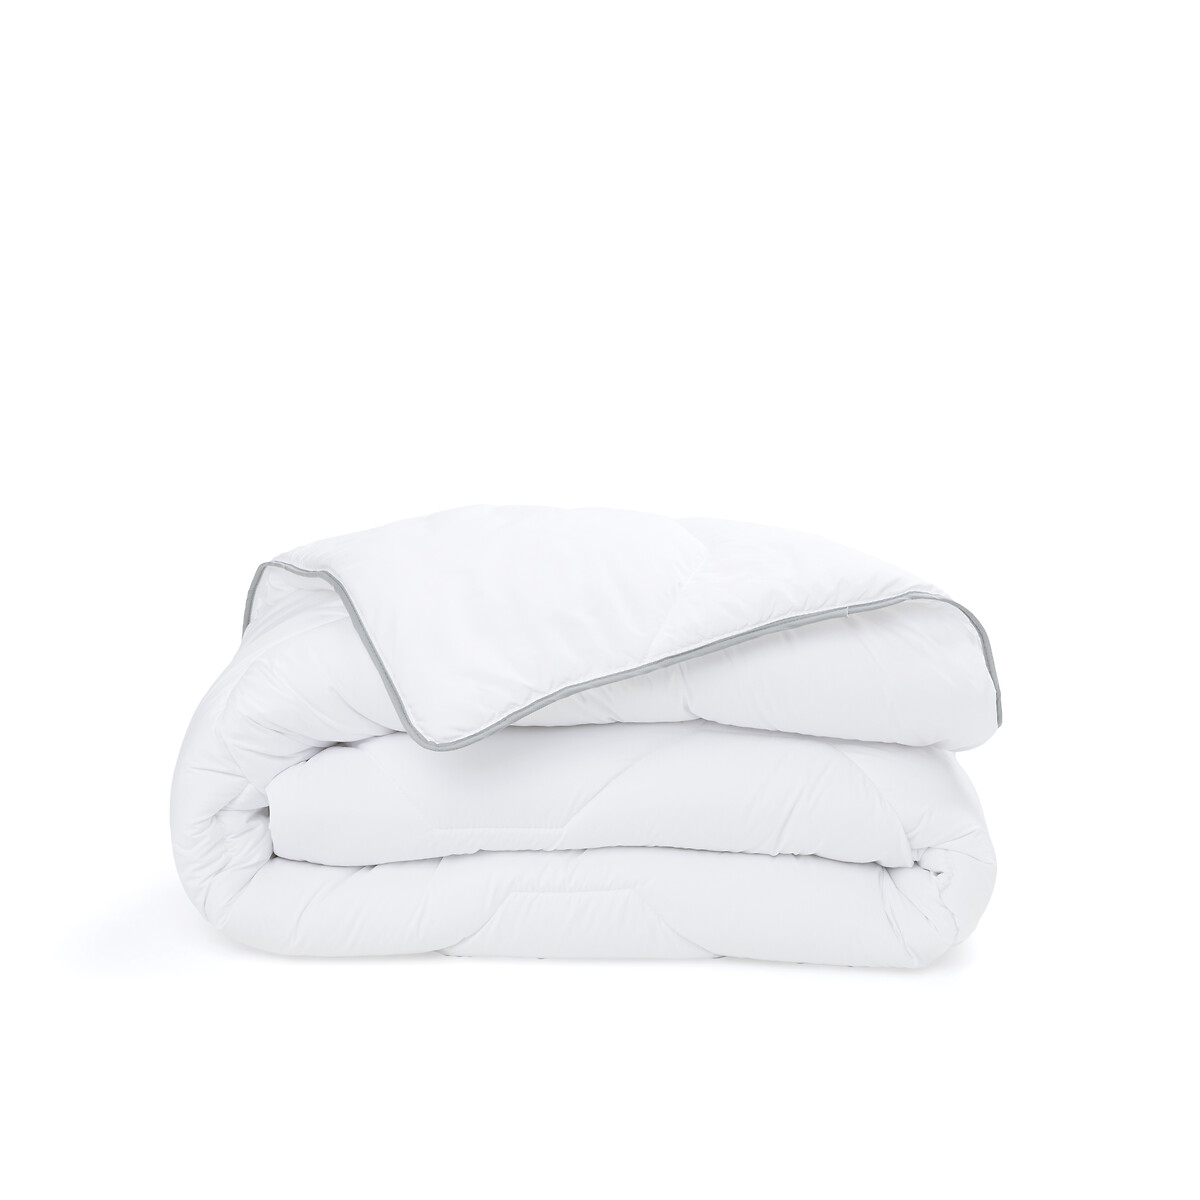 Одеяло из синтетического материала для прохладных помещений Confort htel  140 x 200 см белый LaRedoute, размер 140 x 200 см - фото 2